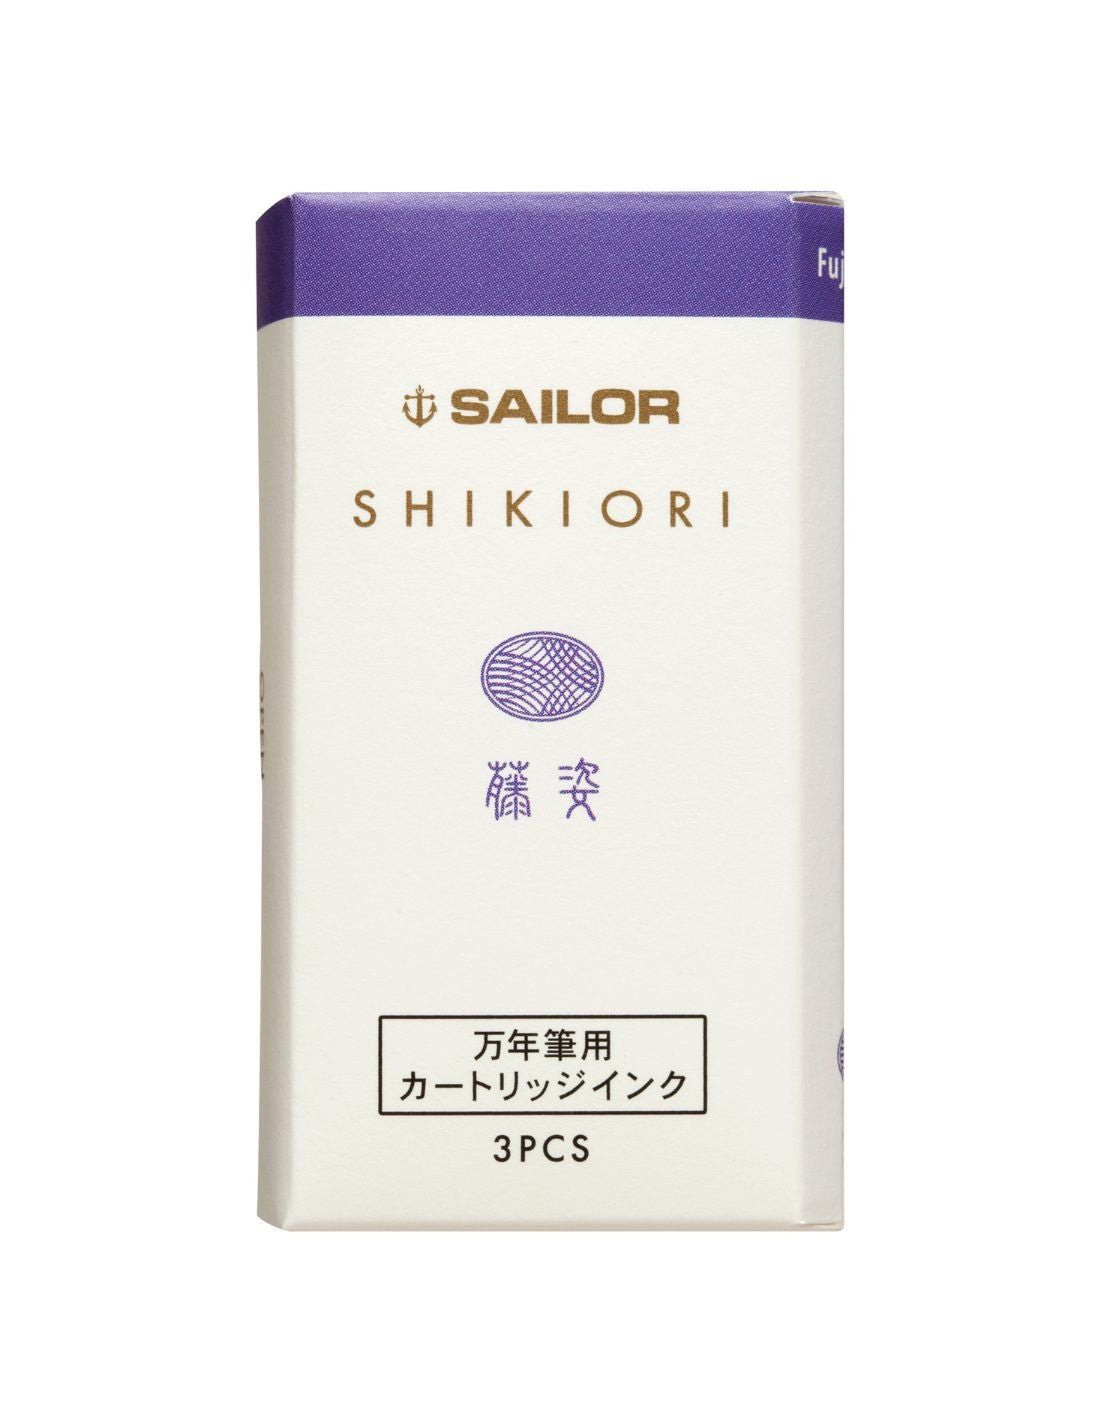 Cartouches d'encre SAILOR Shikiori - 20 ml - Fujisugata - 4901680189138